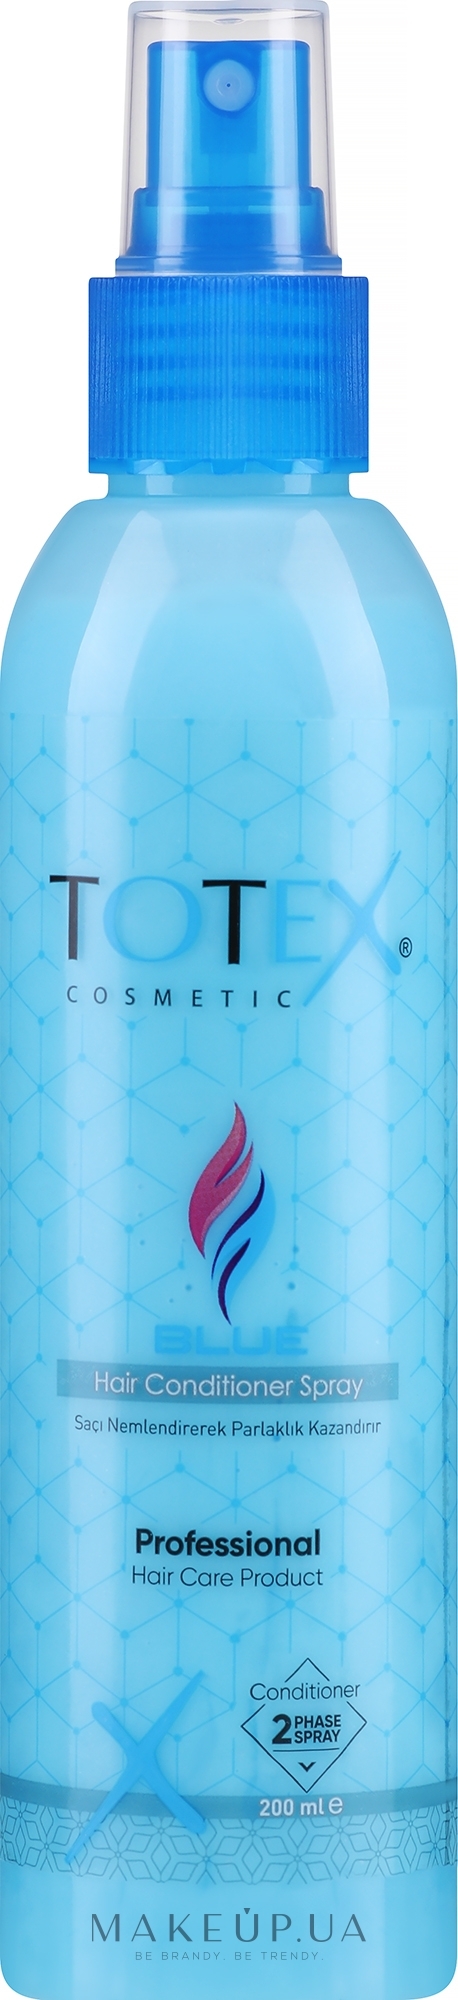 Двофазний спрей-кондиціонер для волосся - Totex Cosmetic Blue Hair Conditioner Spray — фото 200ml